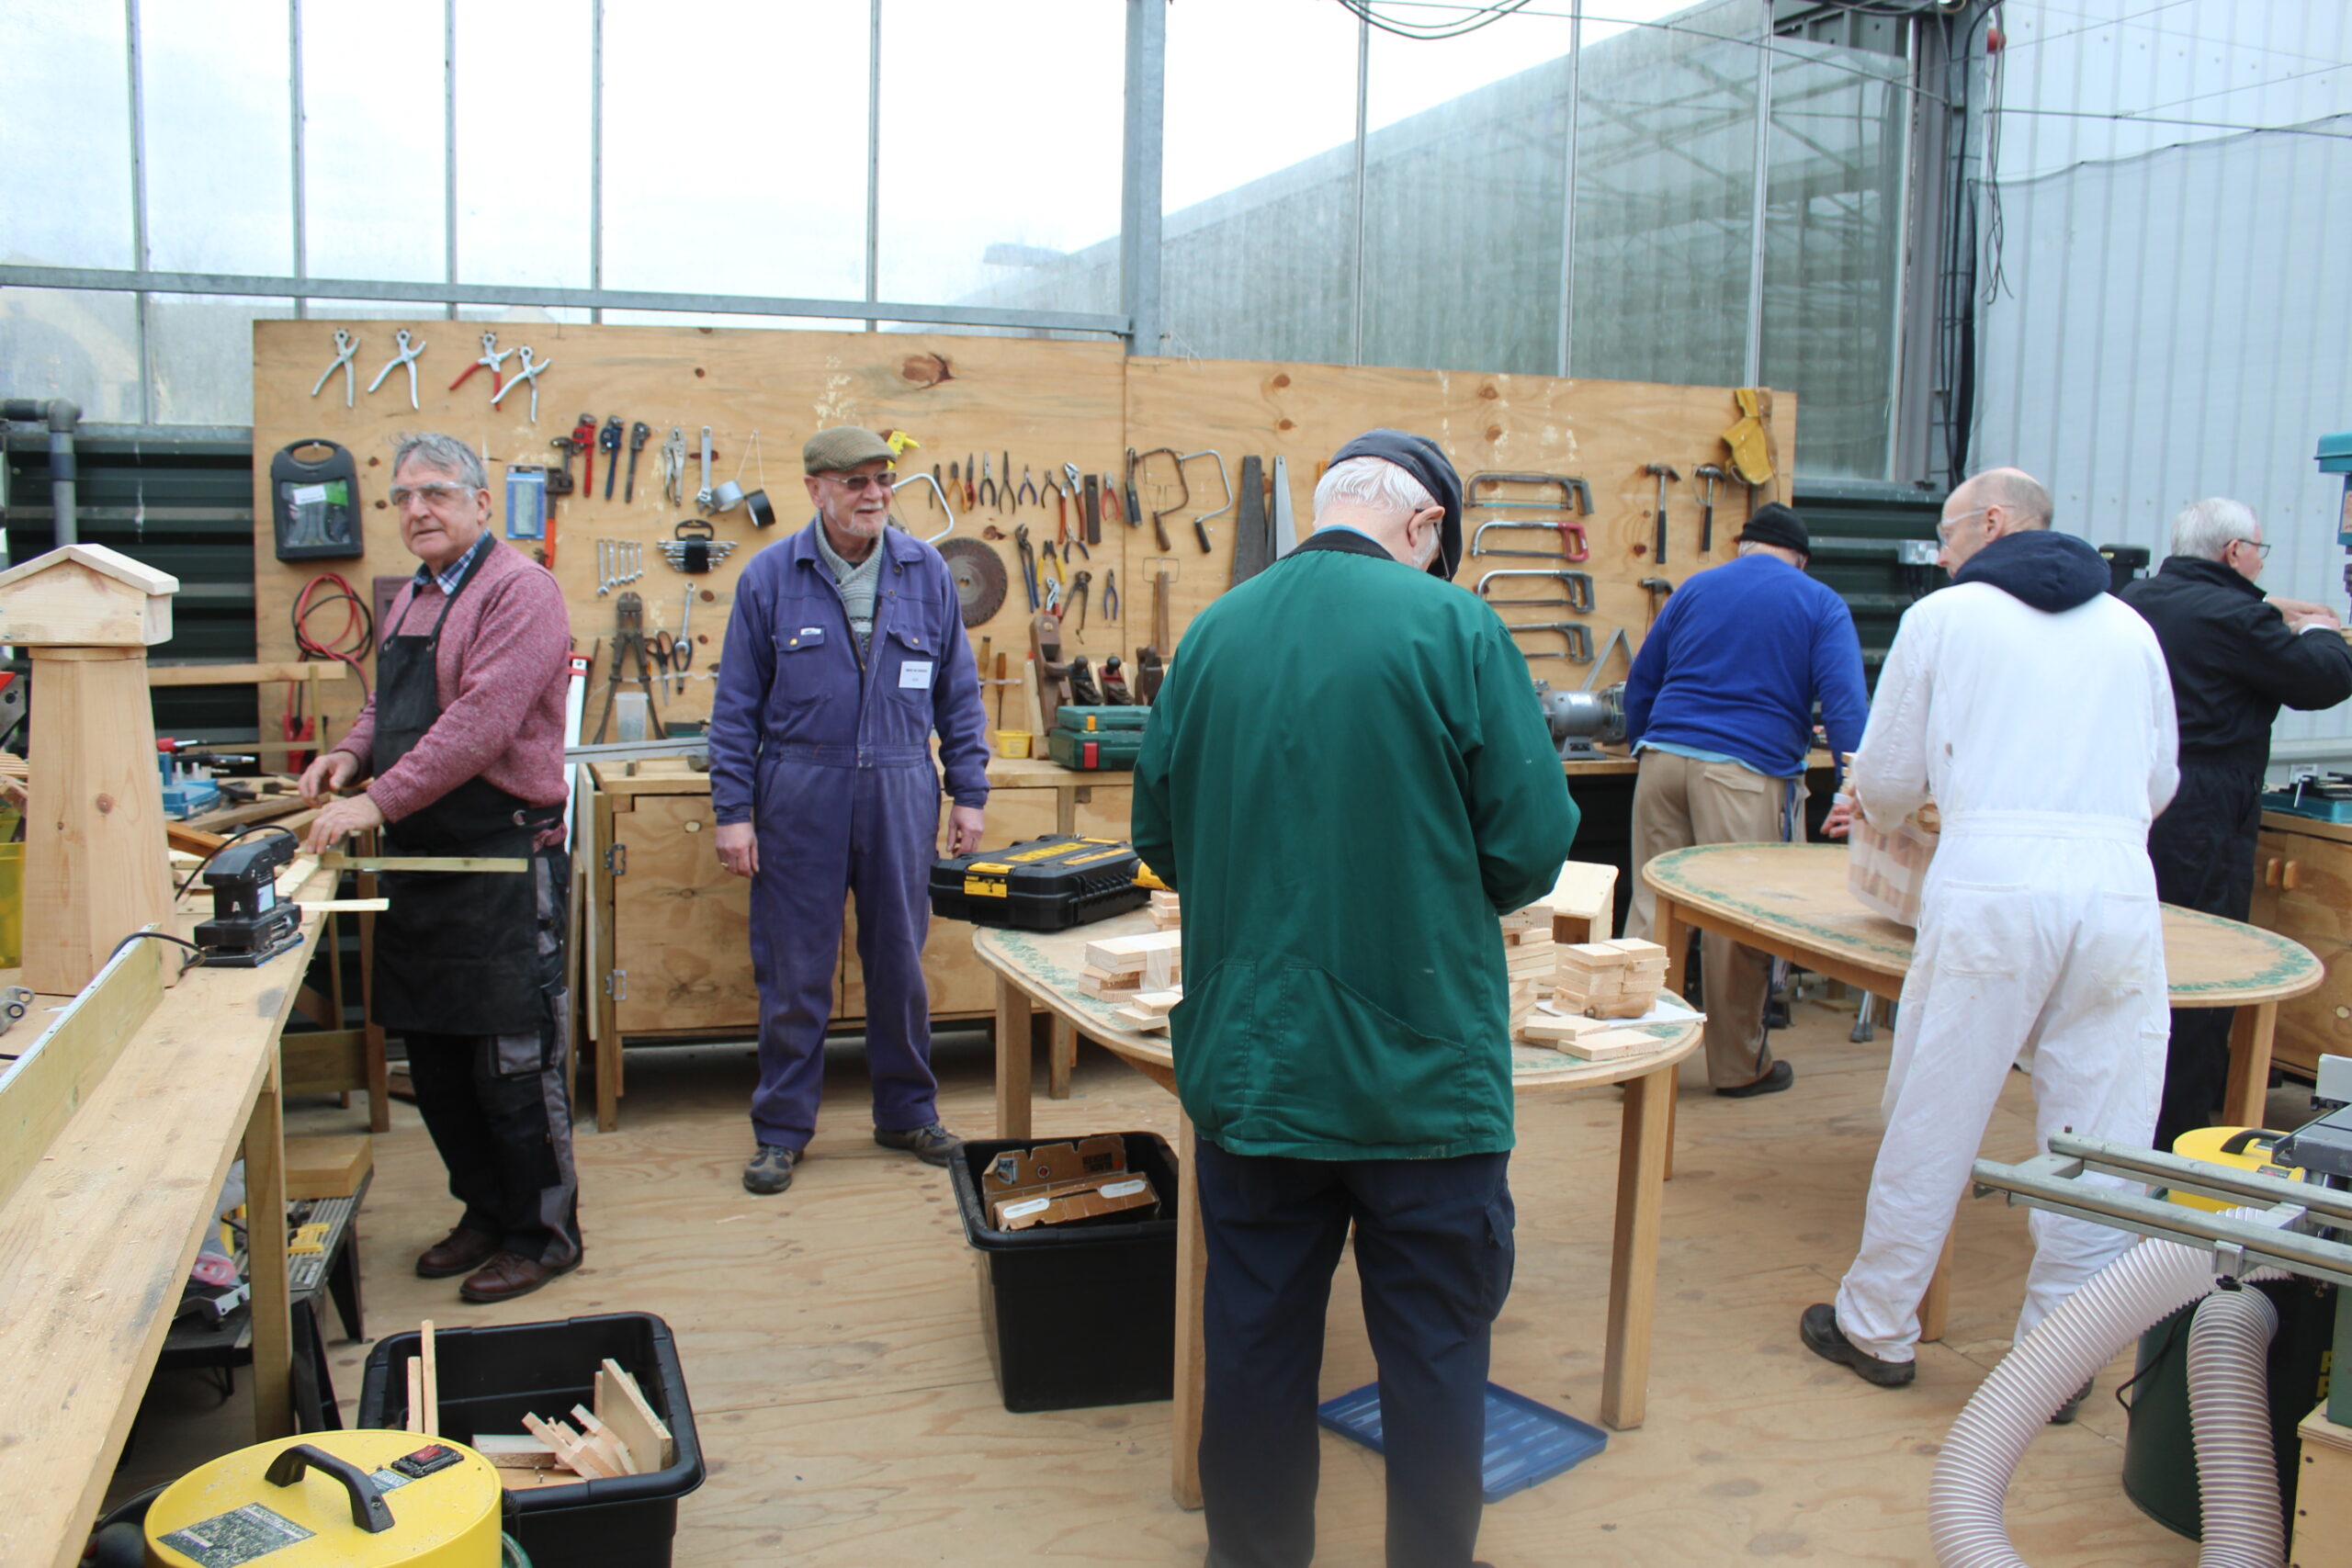 Men in workshop